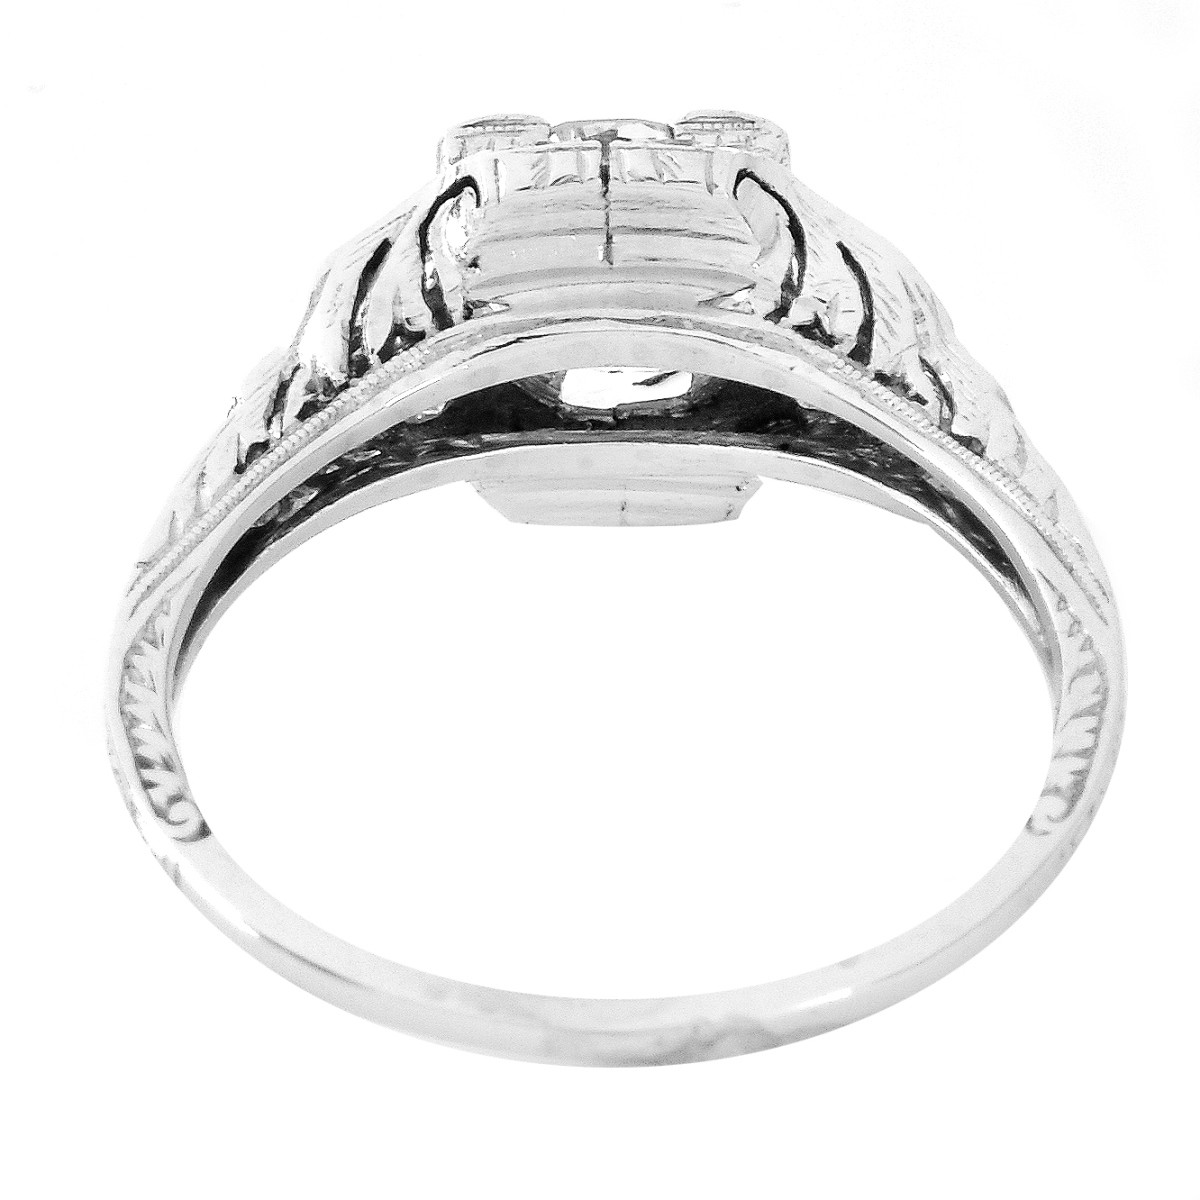 Art Deco 1.30 Carat TW Diamond and Platinum Ring - Image 4 of 5